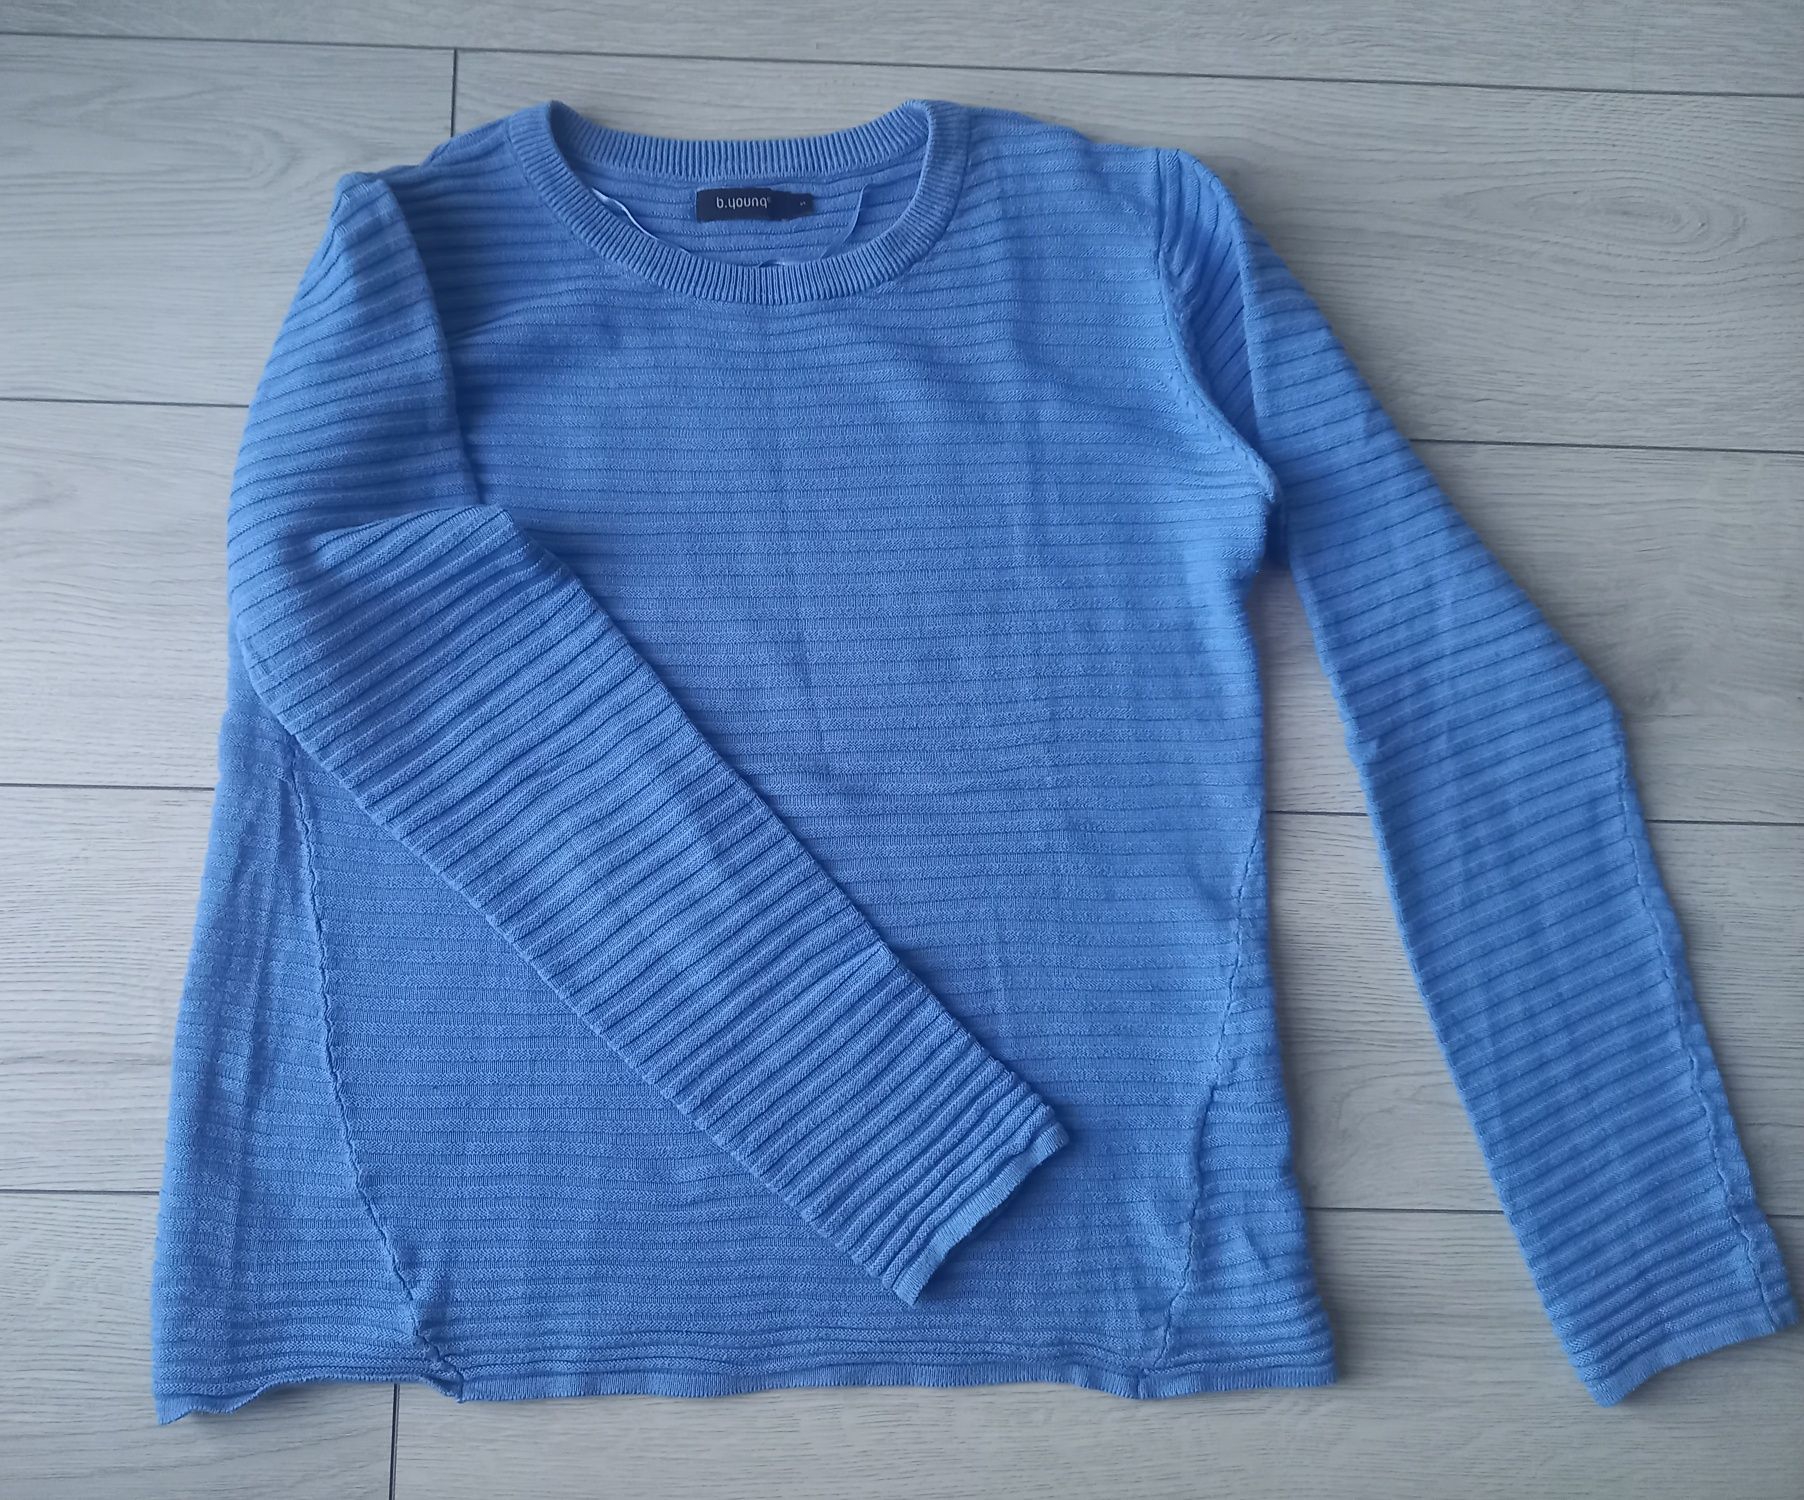 Sweter Sweterek Bluzka Bawełna Wiskoza M S Niebieski Błękitny